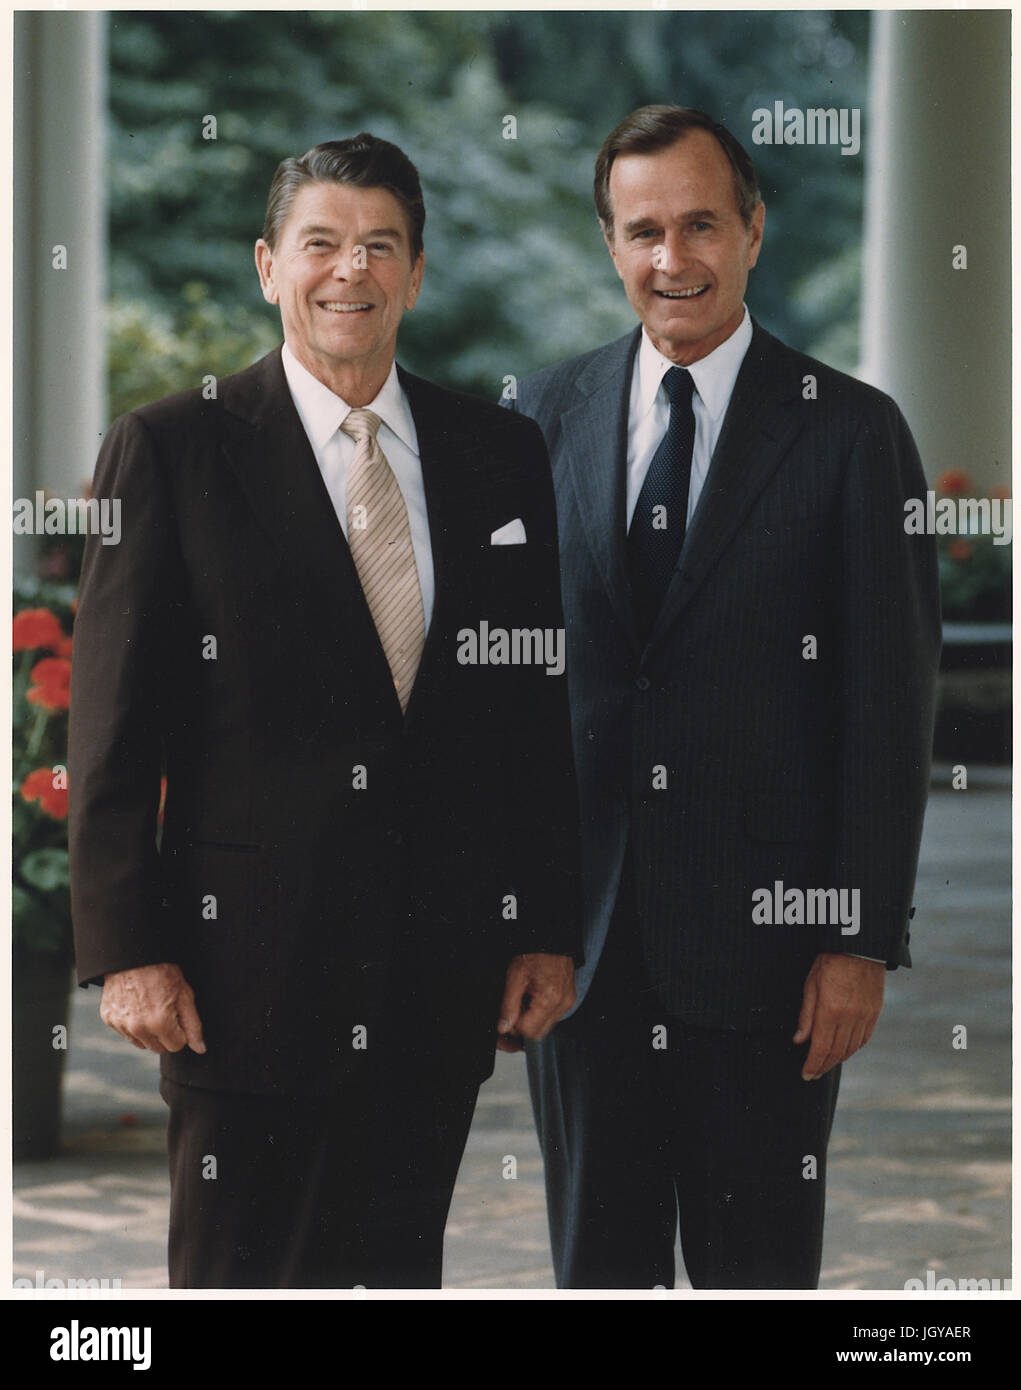 Portrait officiel du président Ronald Reagan et le vice-président George Bush Banque D'Images